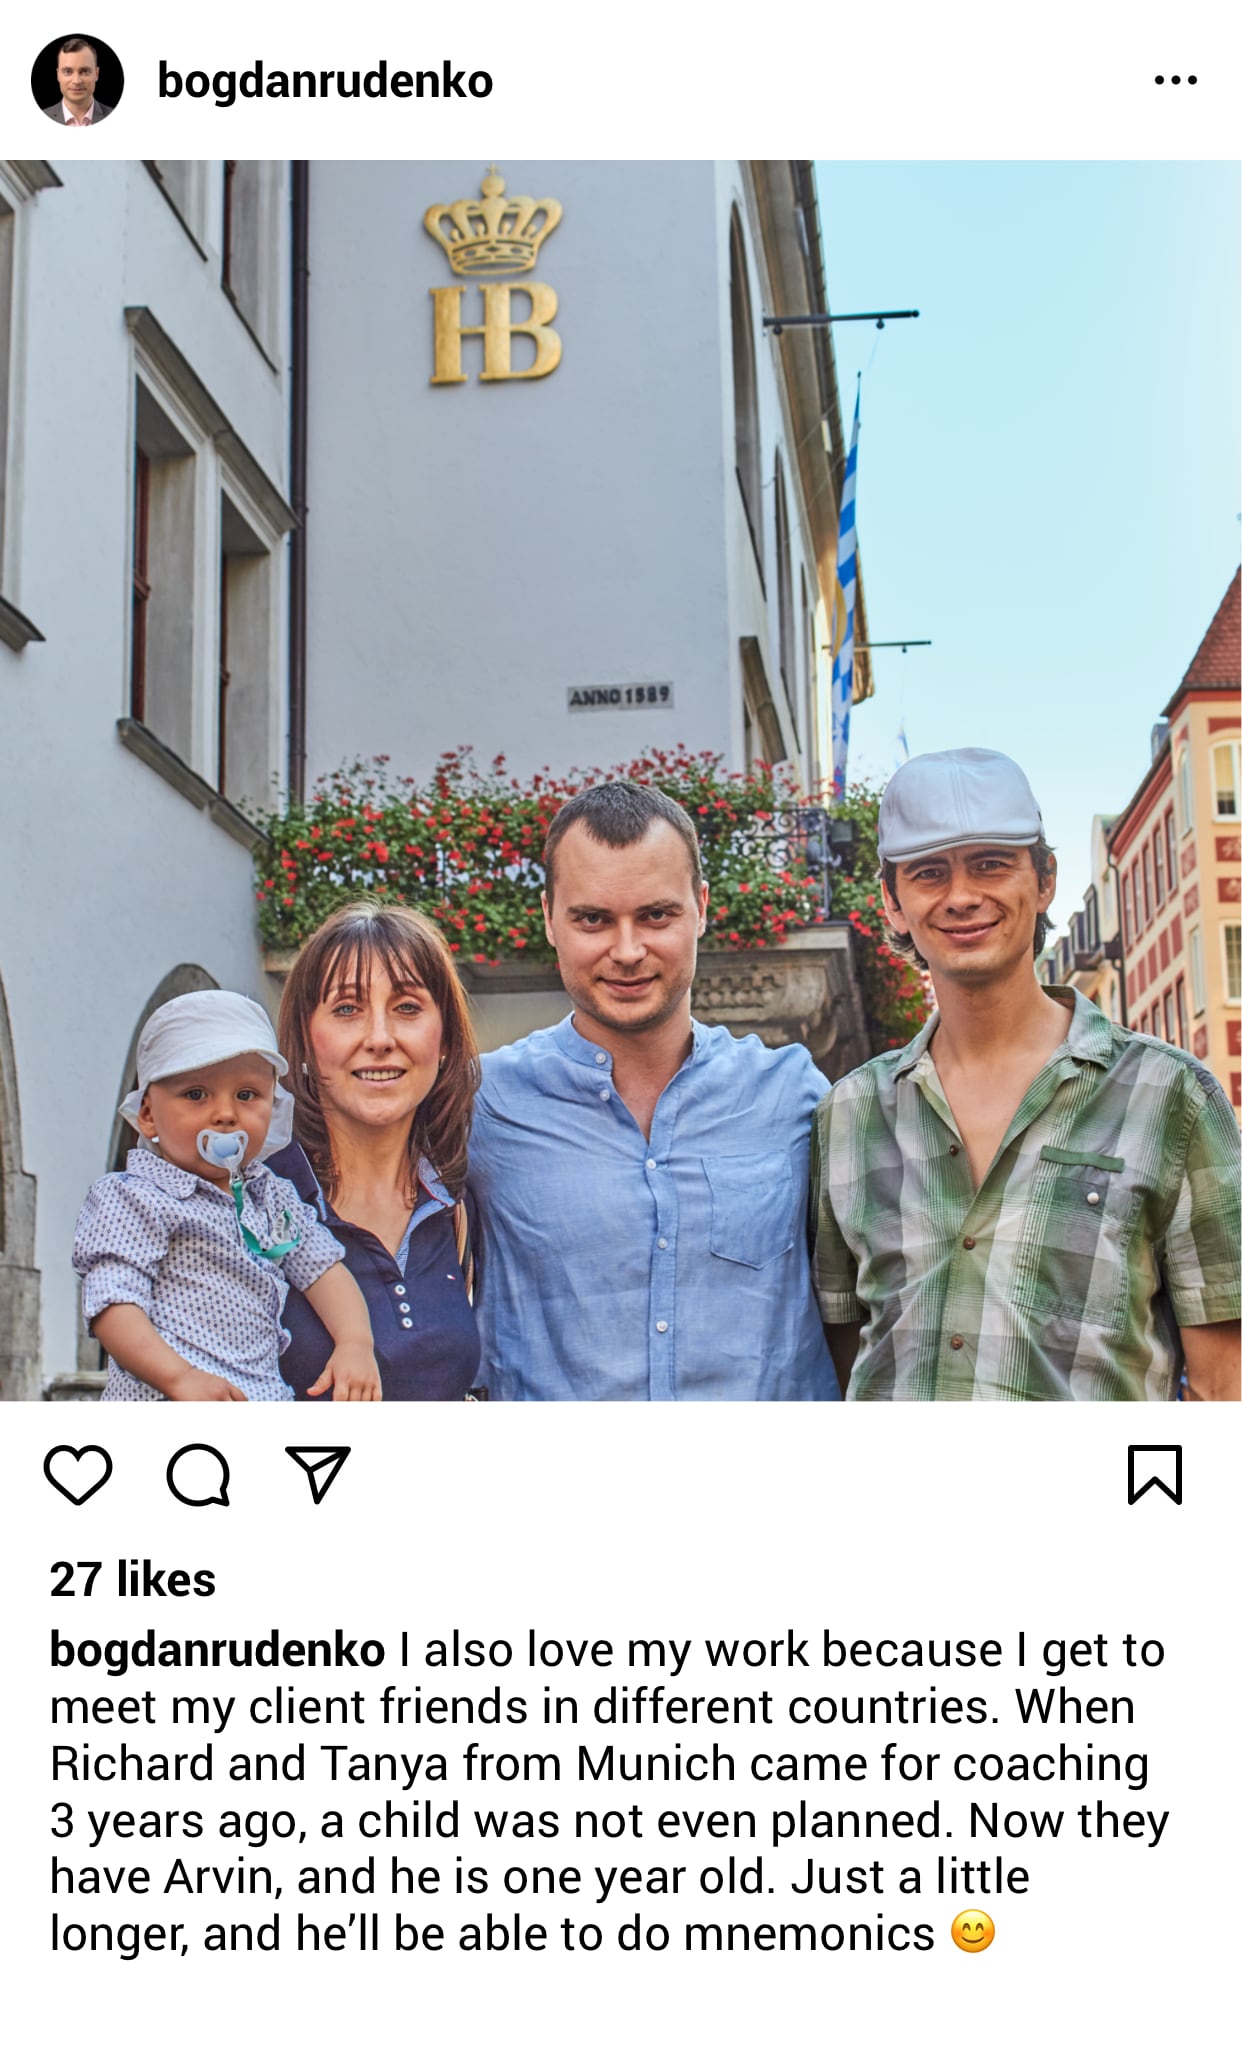 Bogdan Rudenko visiting clients in Munich